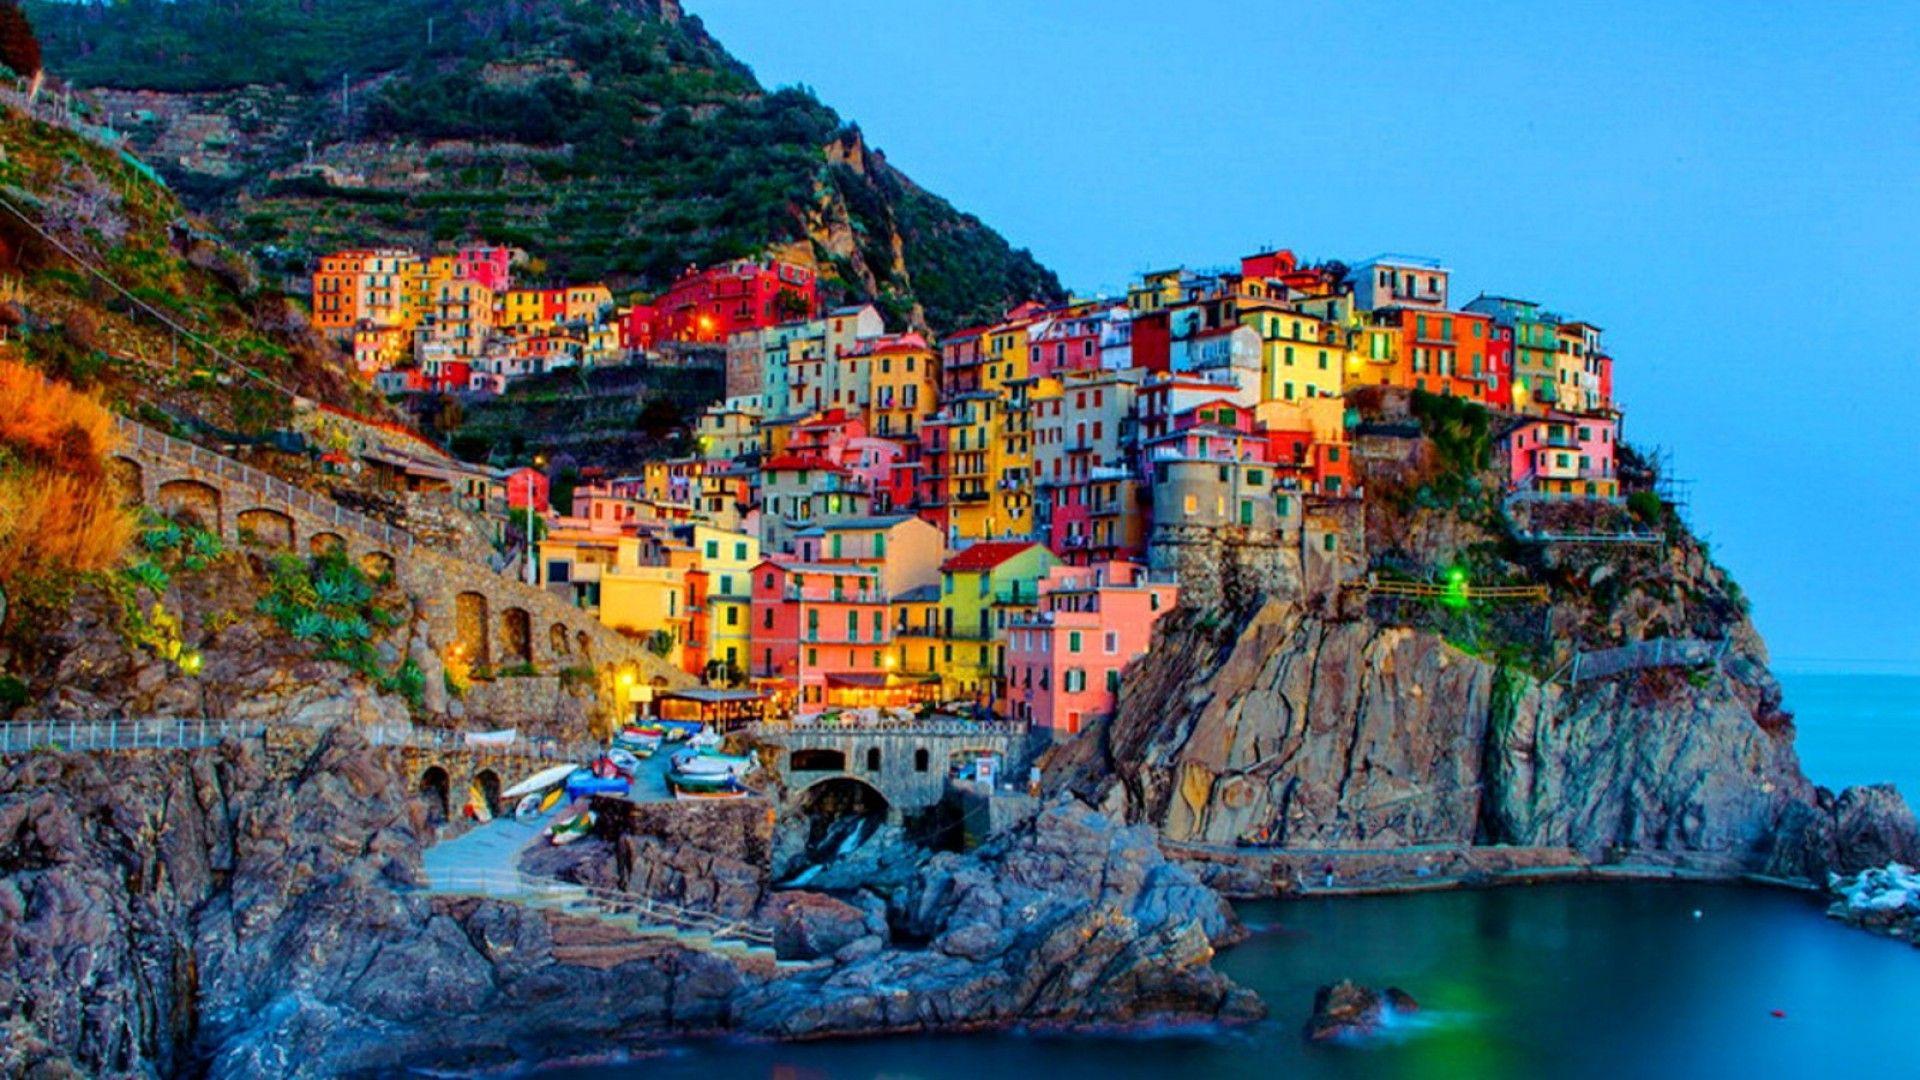 Với hình nền máy tính HD về Italy, bạn có thể ngắm nhìn những vẻ đẹp tuyệt vời của đất nước này ngay tại bàn làm việc của mình. Với những hình ảnh đẹp lung linh, bạn sẽ được đưa tâm hồn đến với những thắng cảnh tuyệt đẹp của Italy.